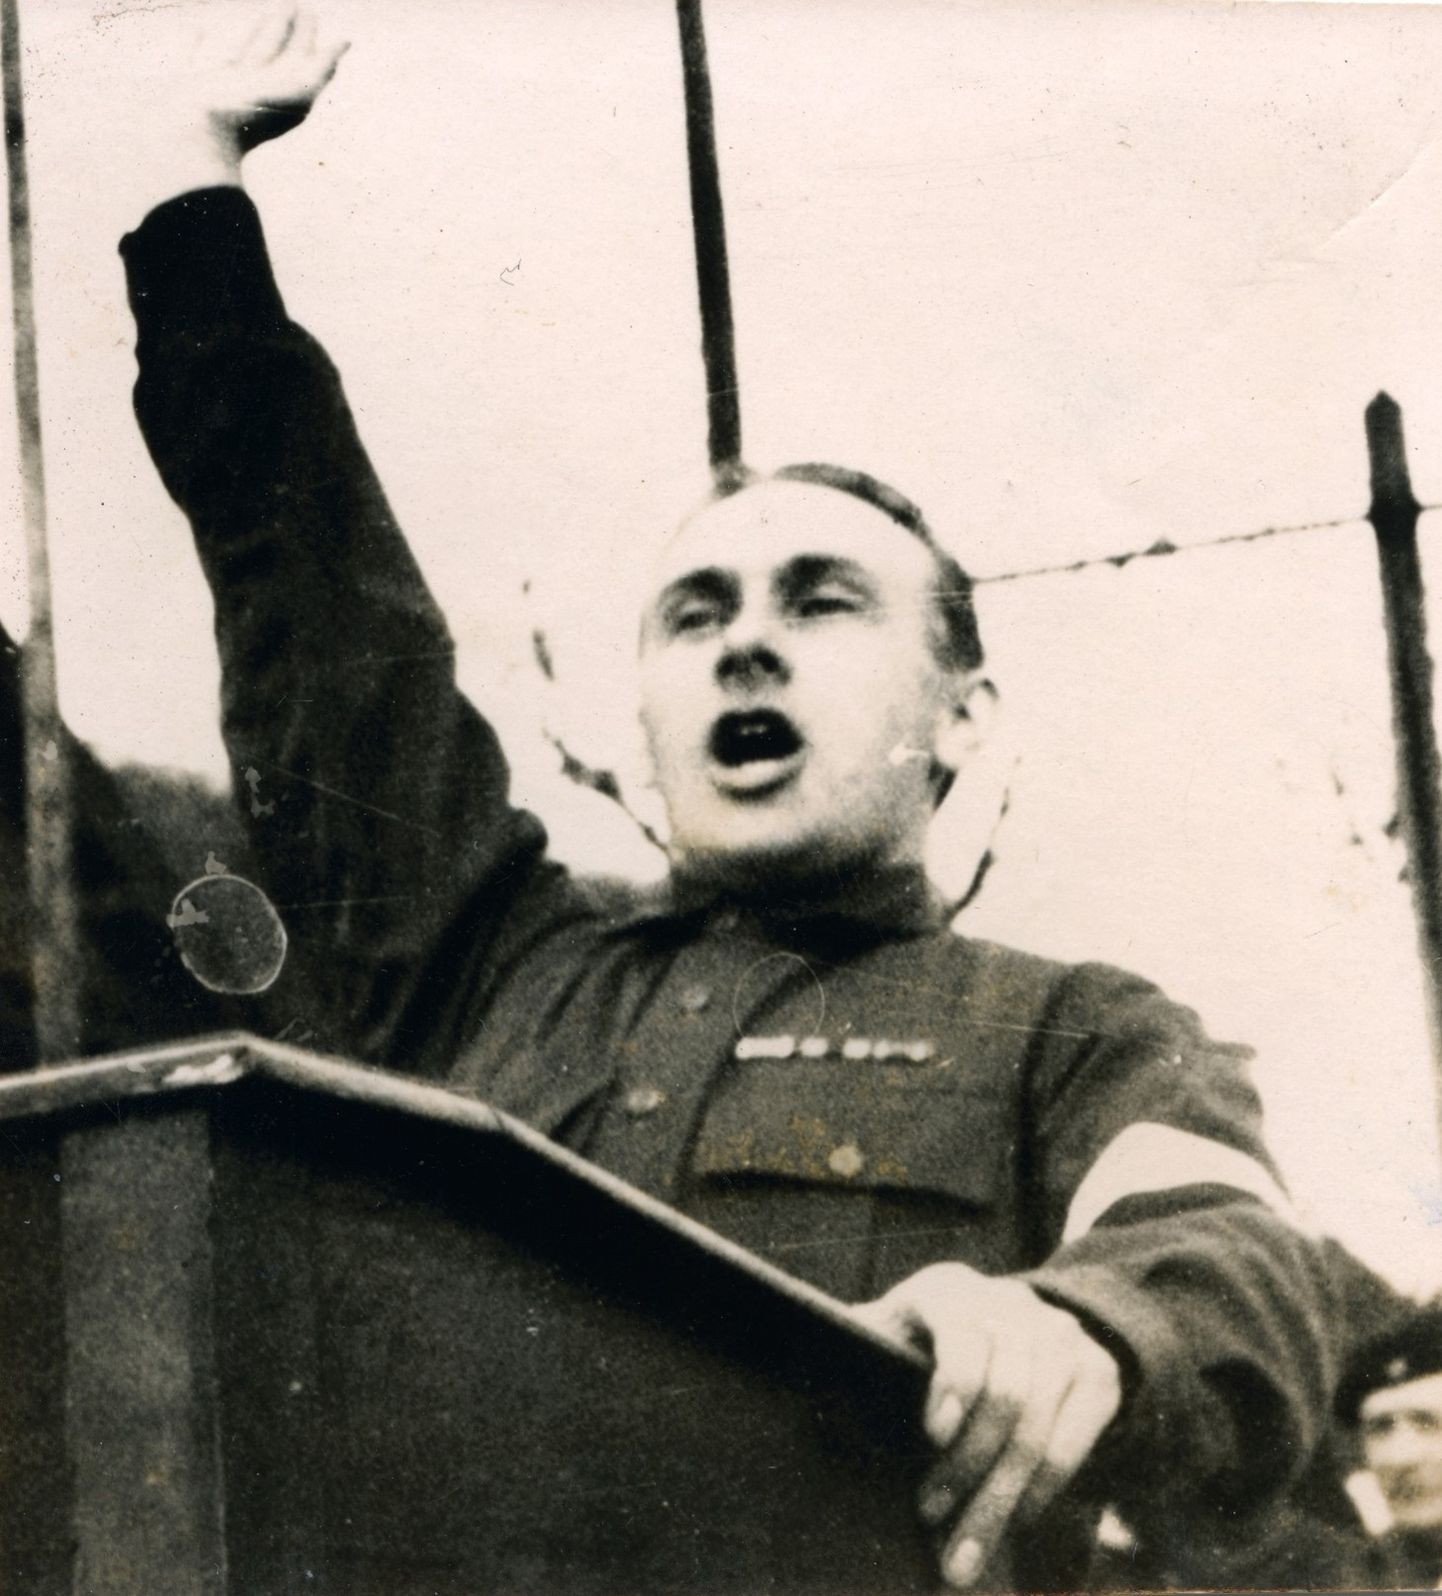 Eesti Vabadussõjalaste Liidu Tallinna organisatsiooni esimees Artur Sirk 1933. aastal